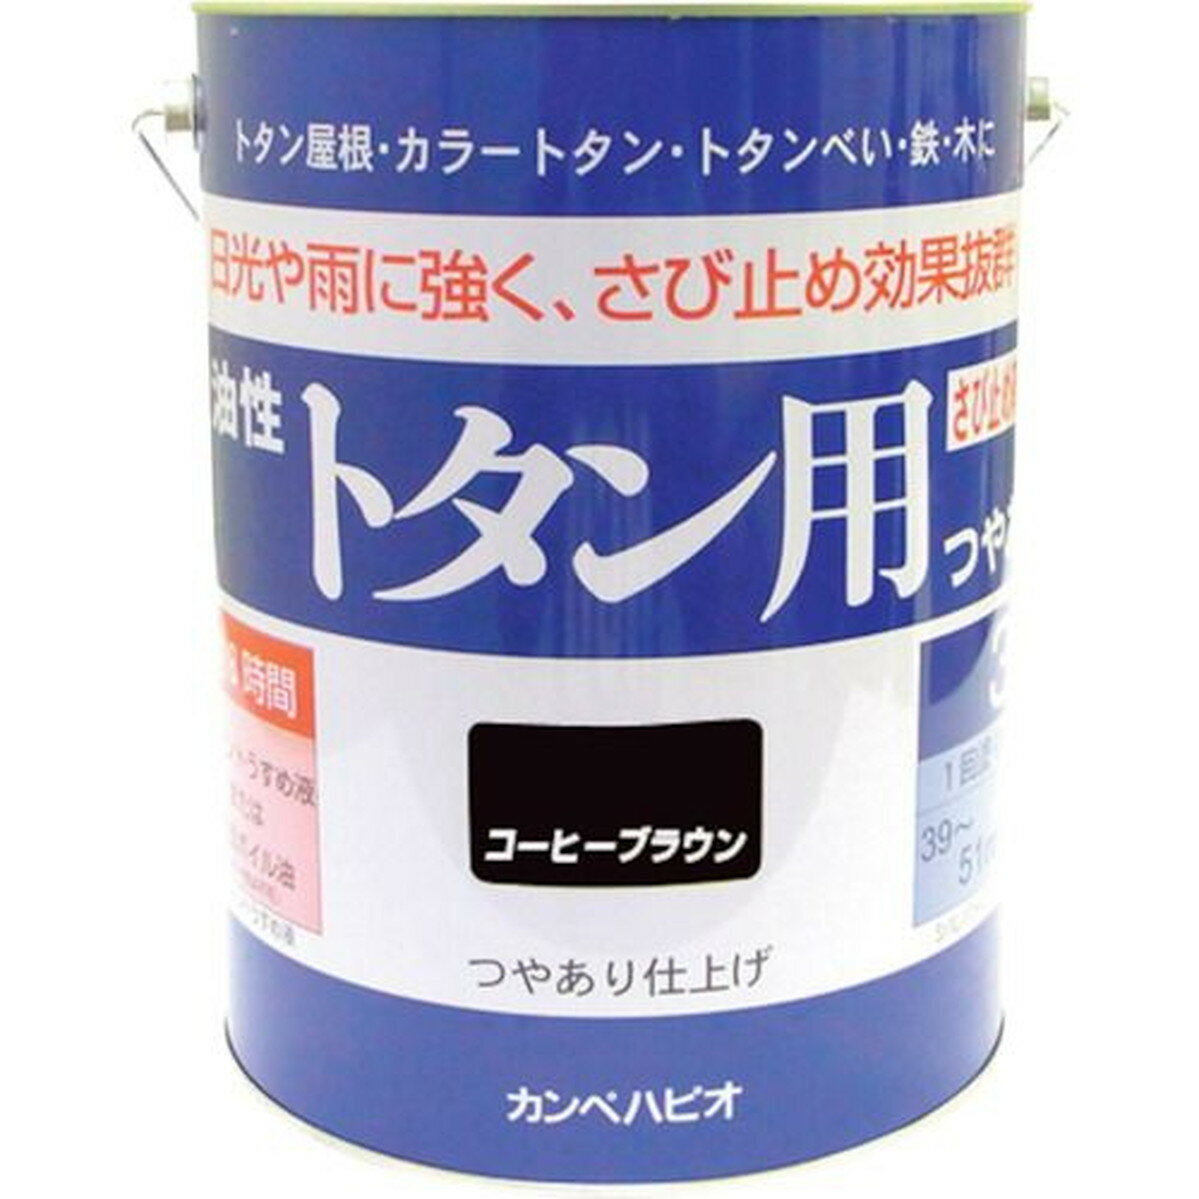 KANSAI カンペ 油性トタン用3Lコーヒーブラウン 1缶 (130-5443)